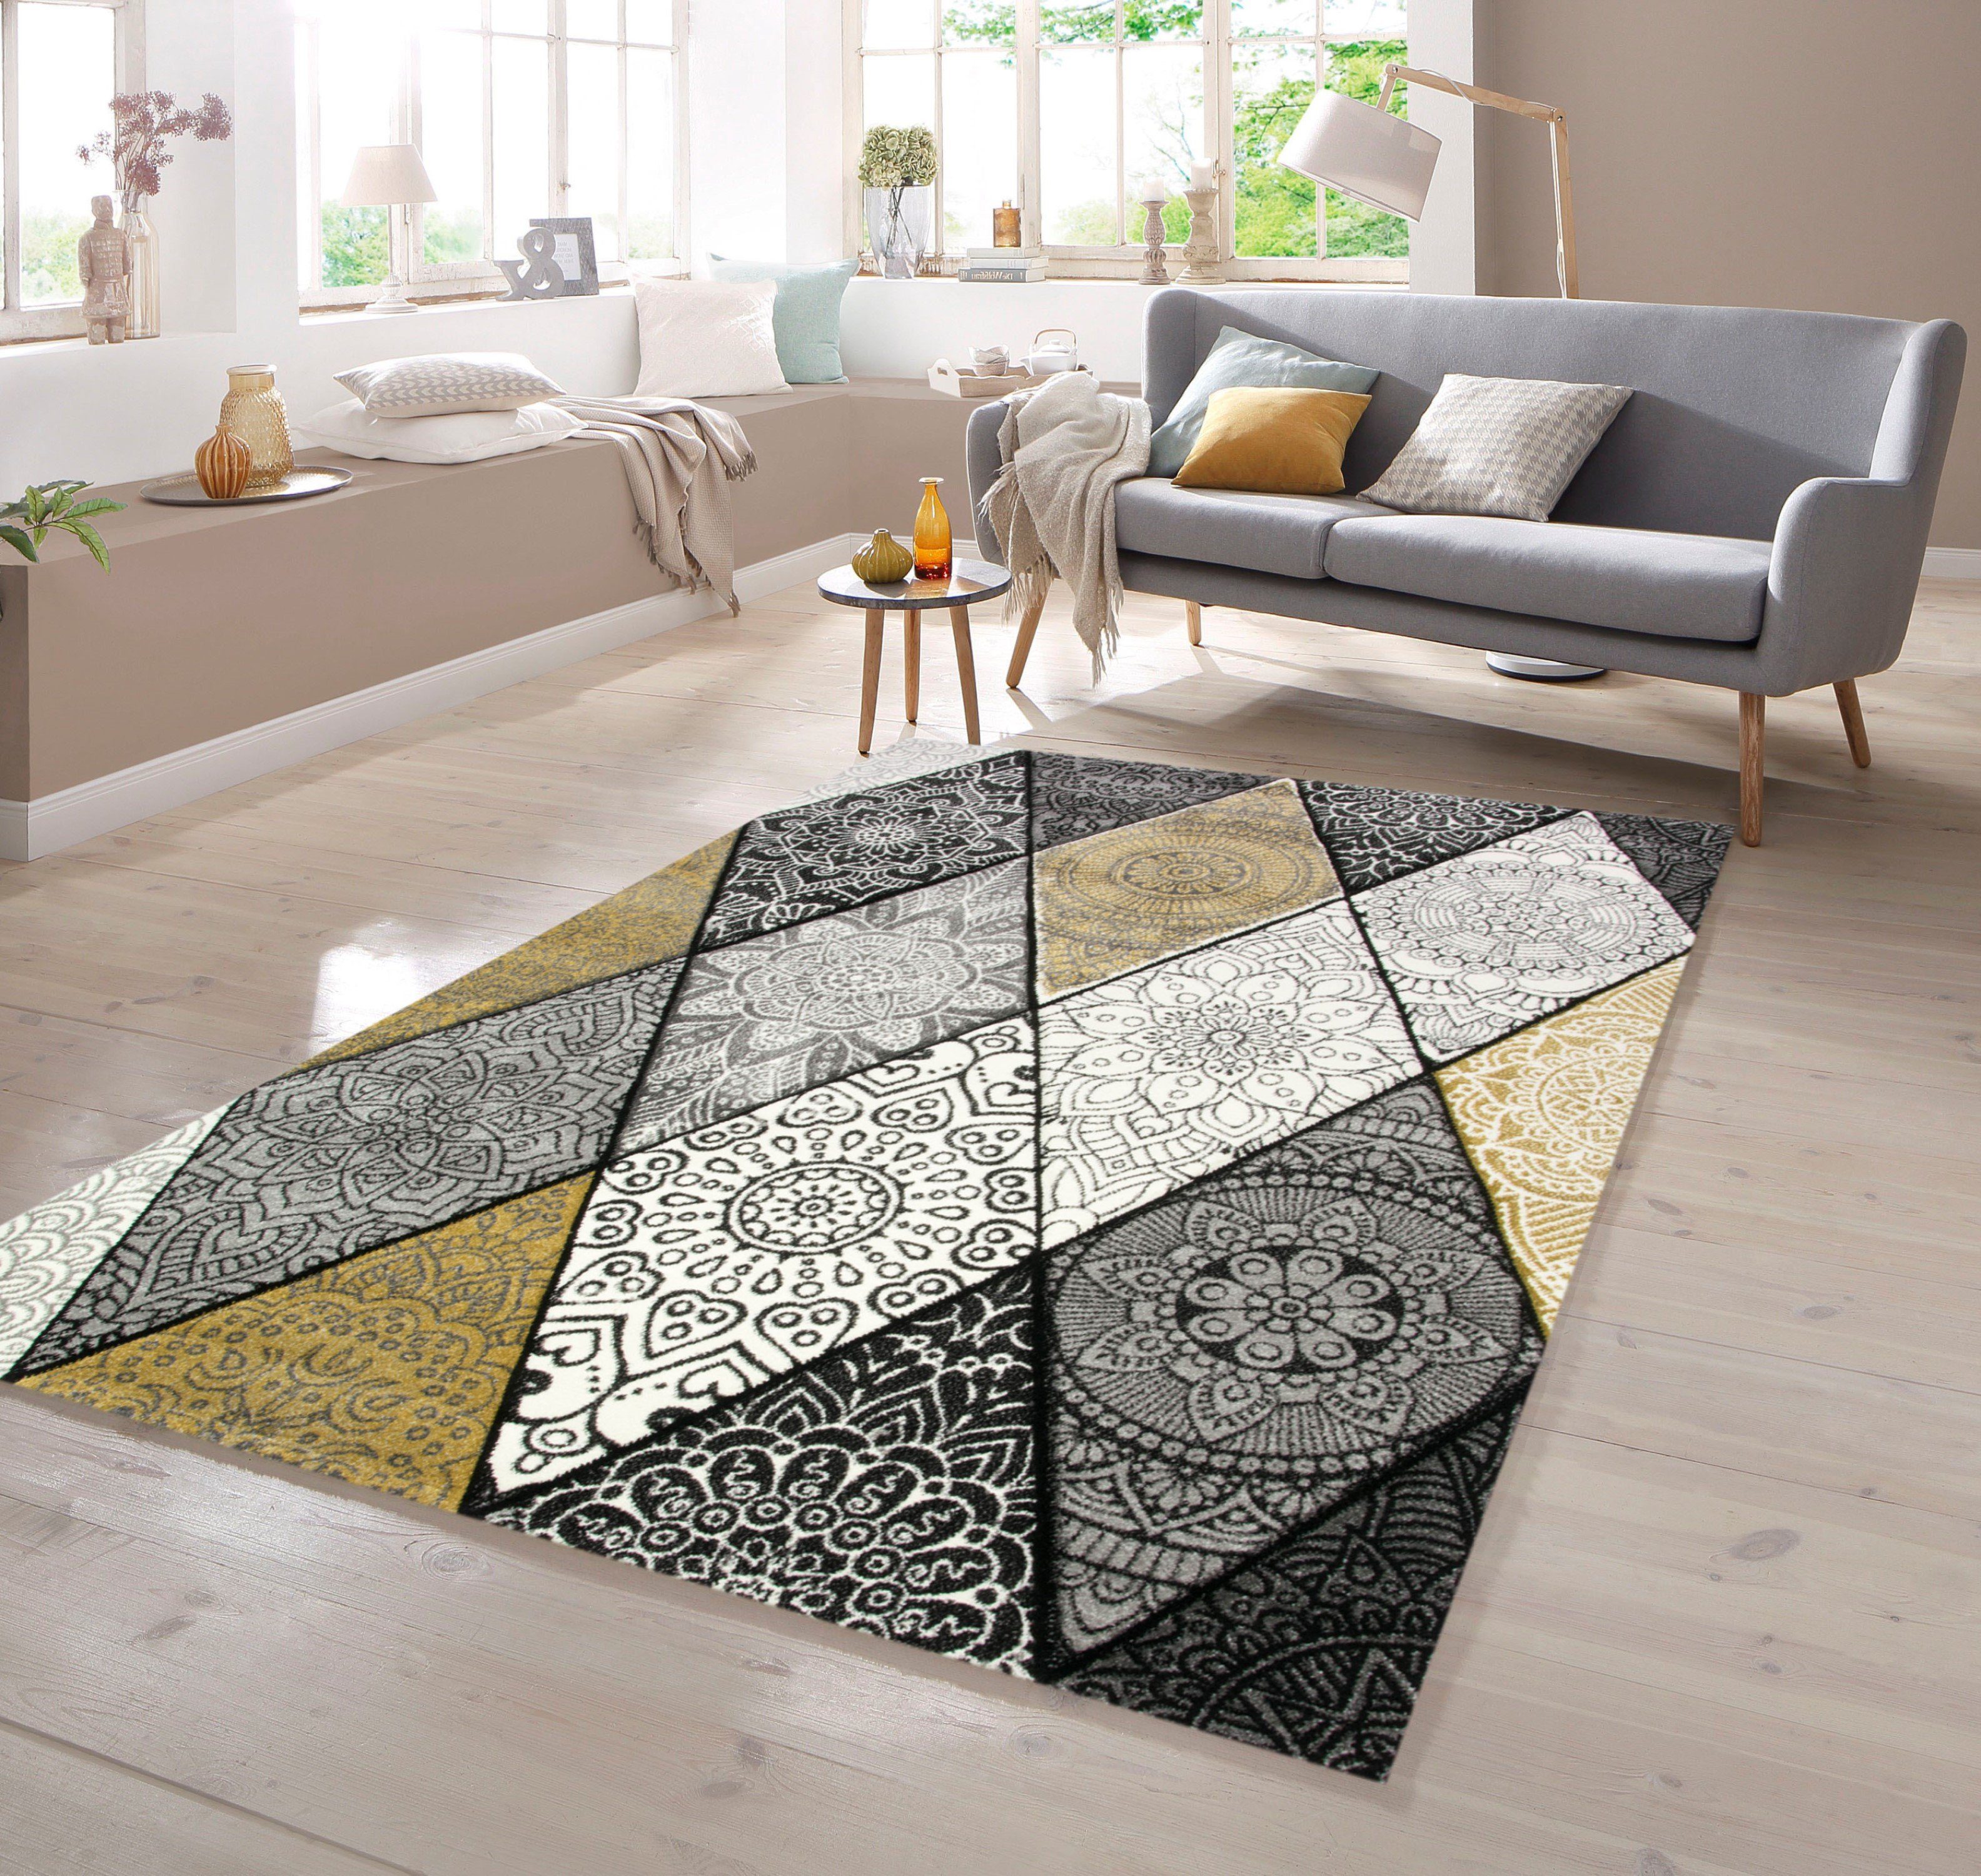 Teppich Teppich Wohnzimmer Rauten mit Ornamenten in grau senfgelb creme, TeppichHome24, rechteckig